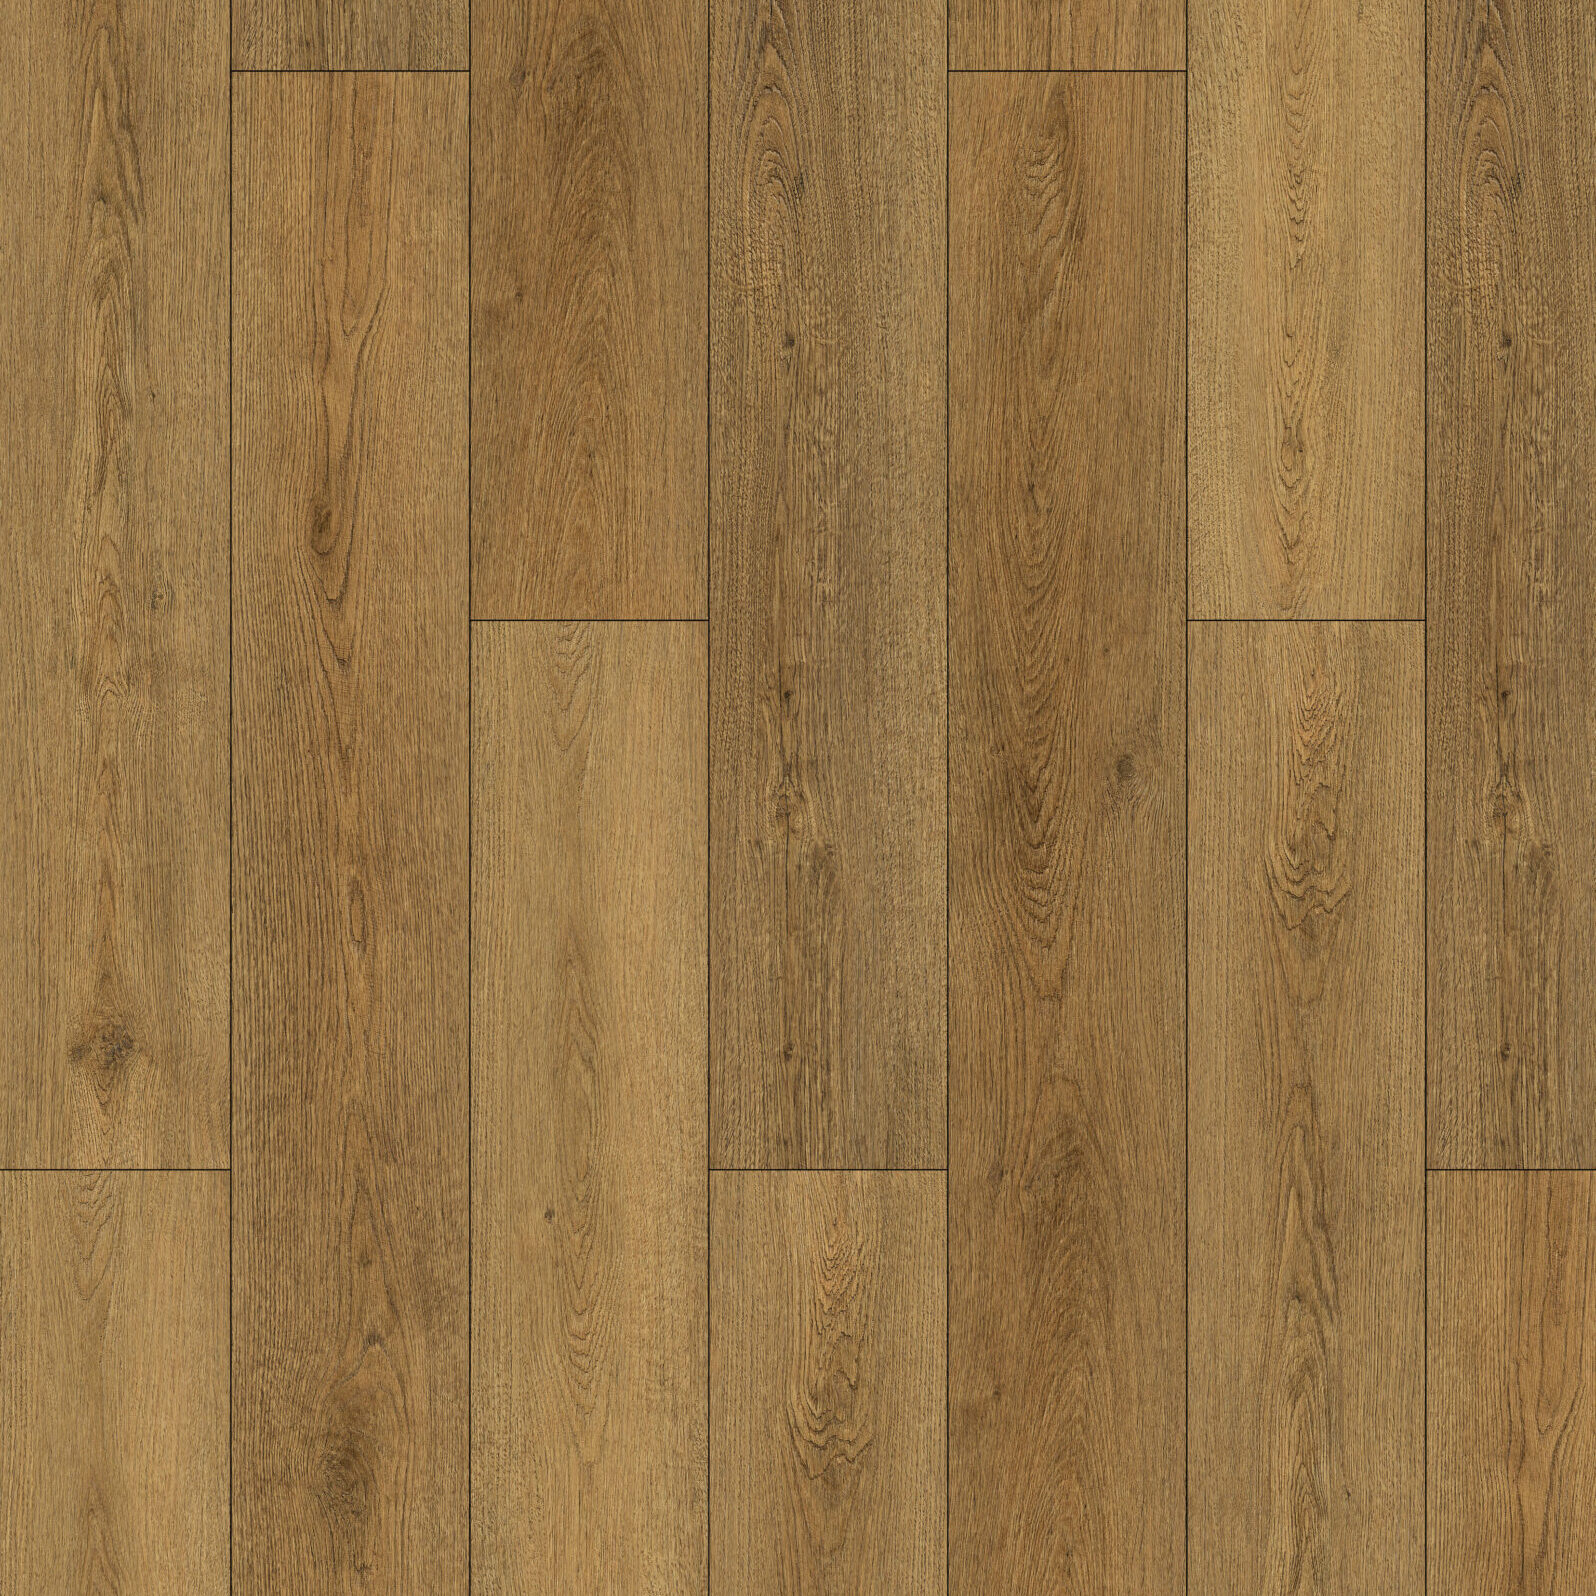 A light brown Heartwood flooring